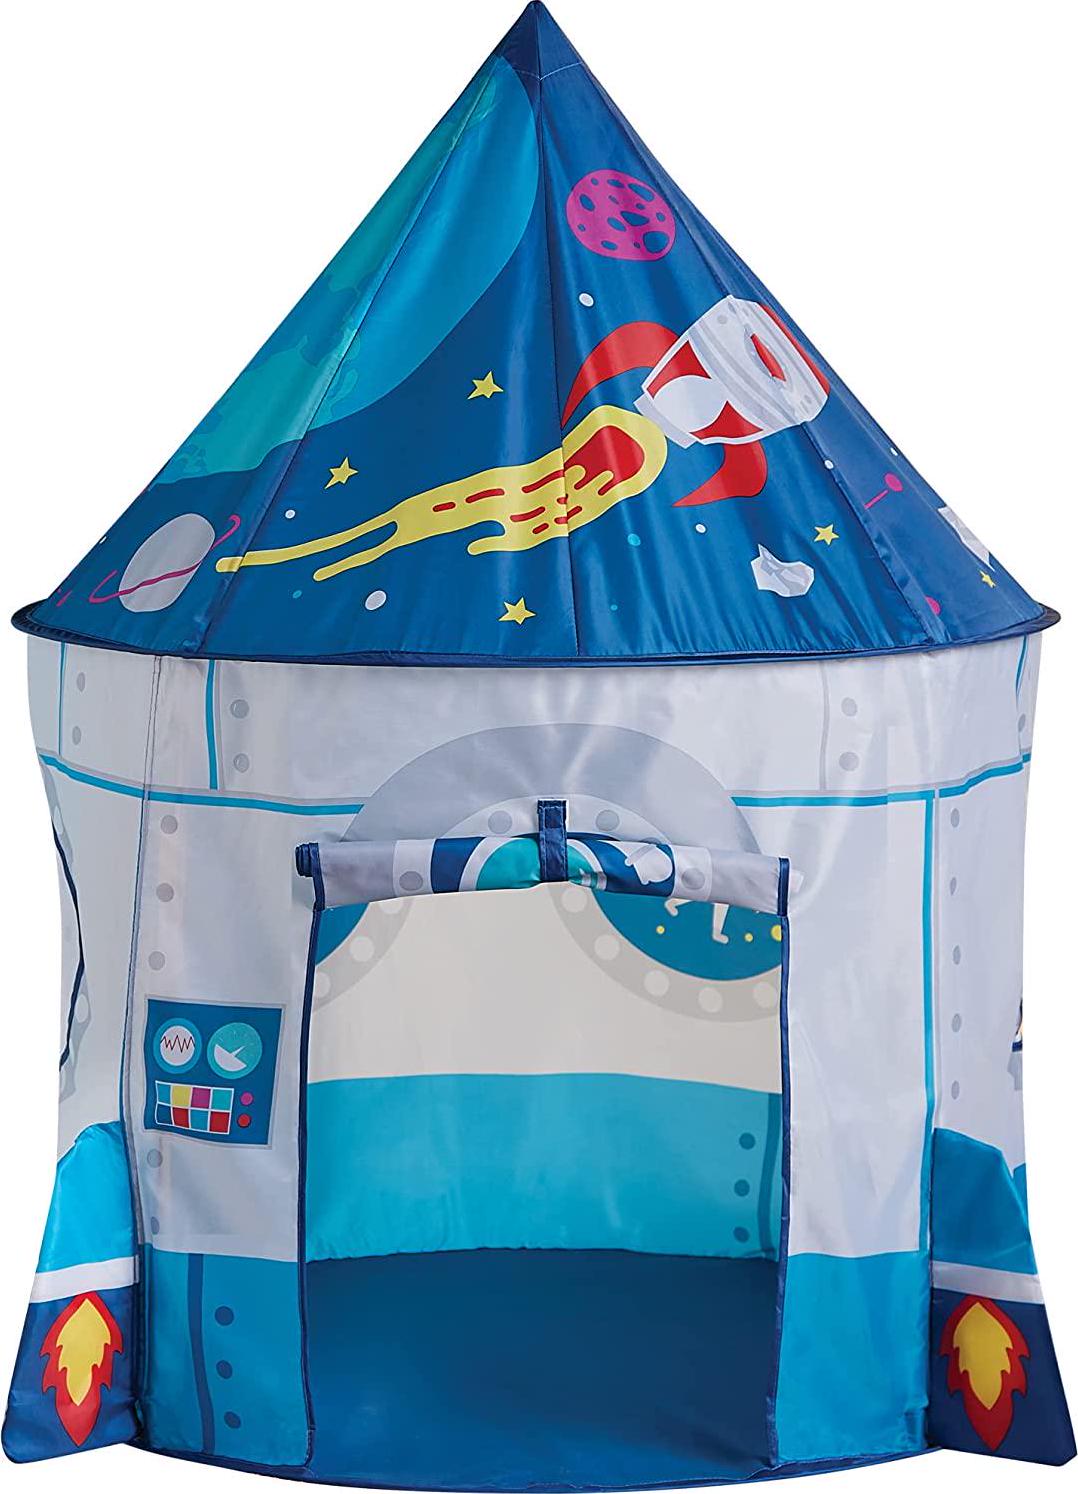 Kidodo, Kidodo Play Tent for Kids Toy Children Pop Up Tent Kids Playhouse Indoor